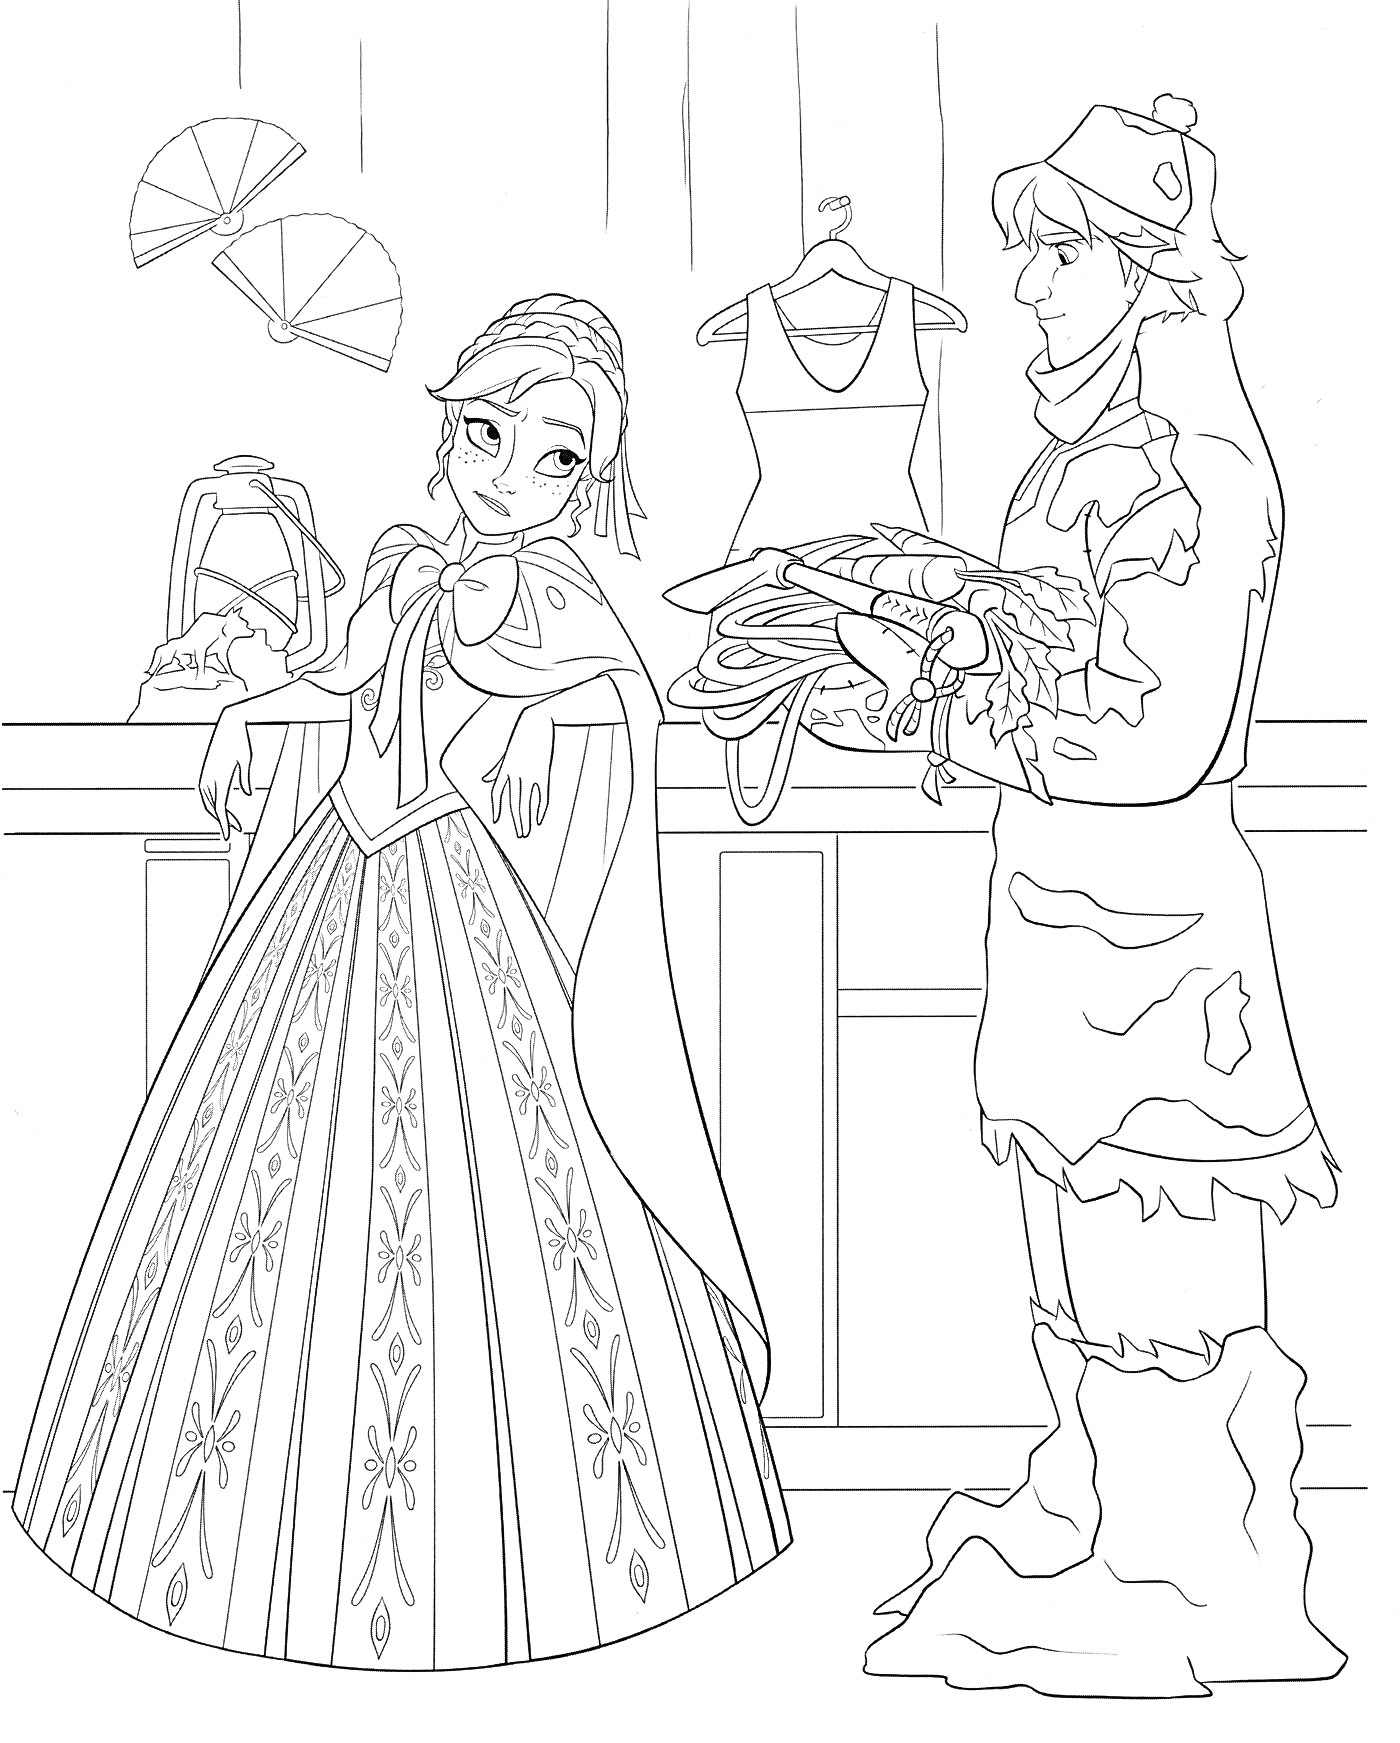 Раскраска Женщина в длинном платье и мужчина в зимней одежде с сеном в руках, элементы гардероба на фоне